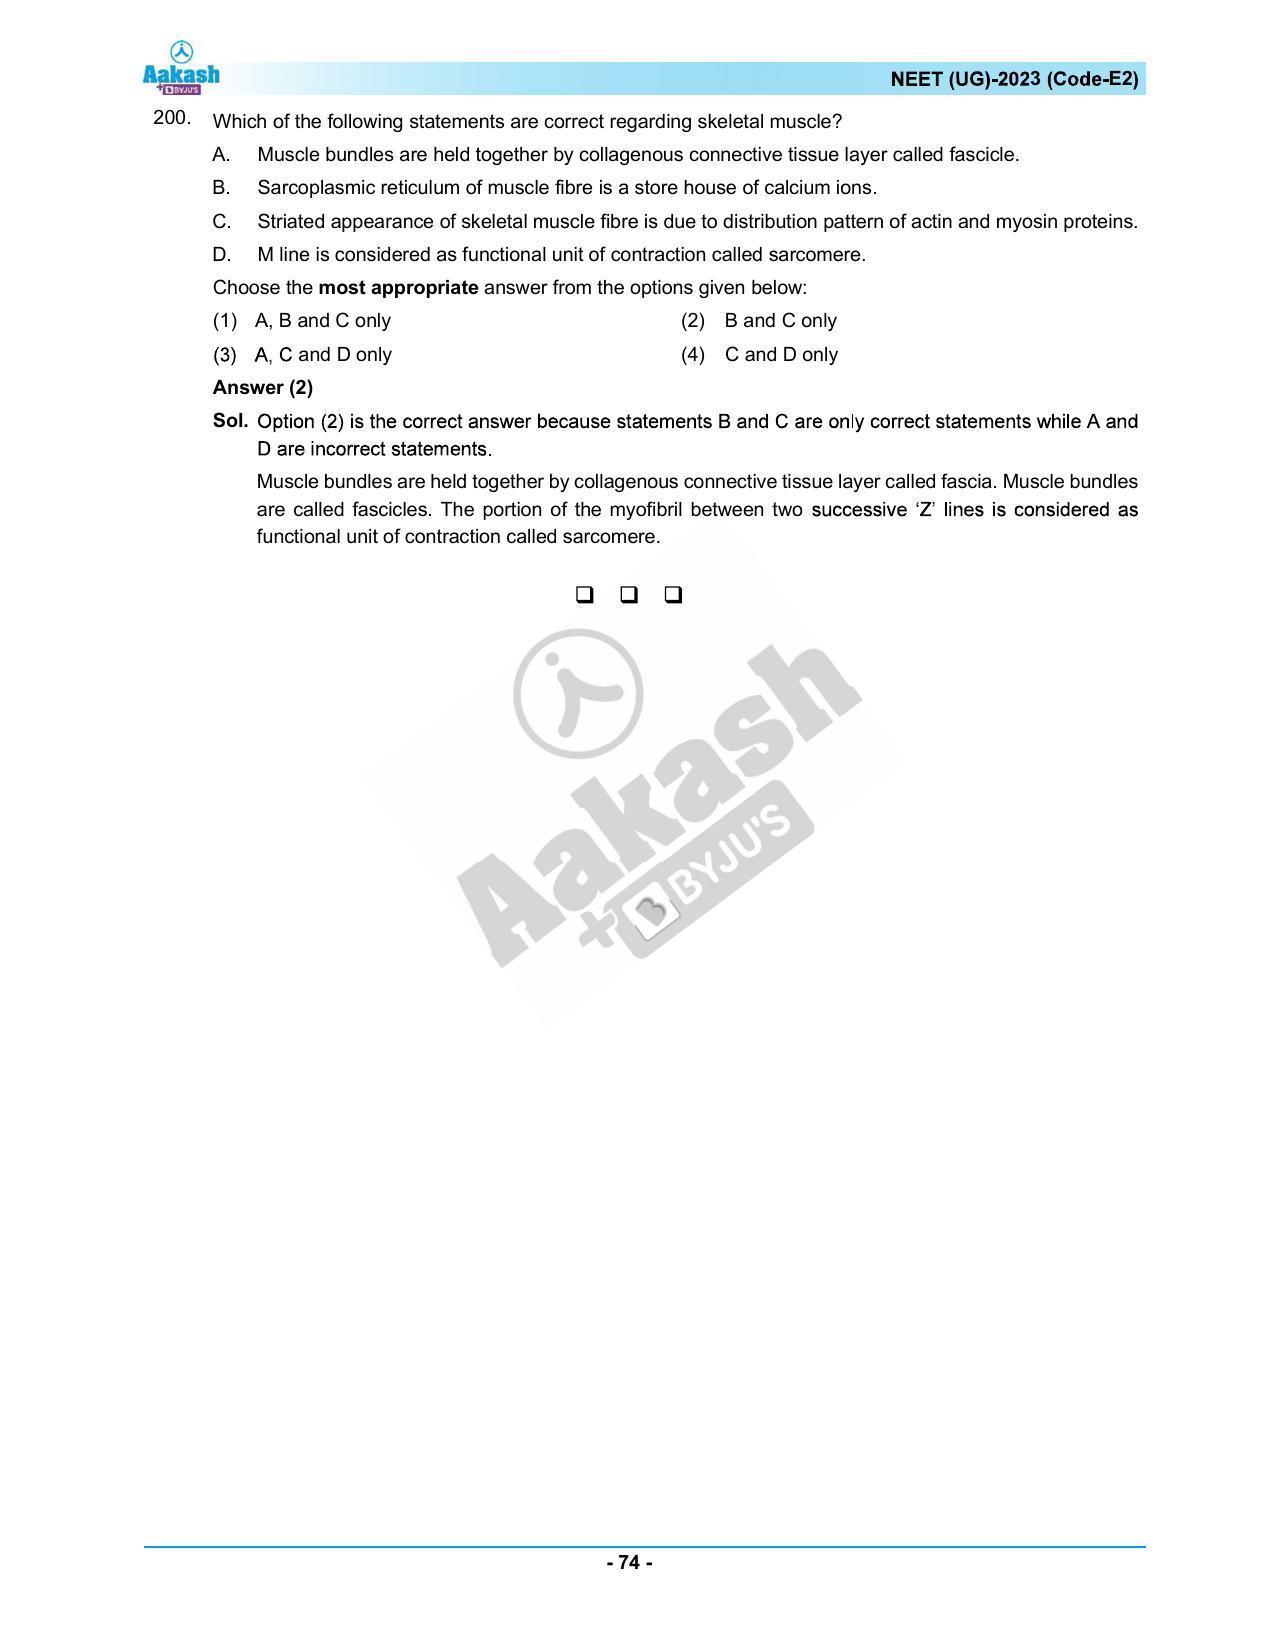 NEET 2023 Question Paper E2 - Page 74